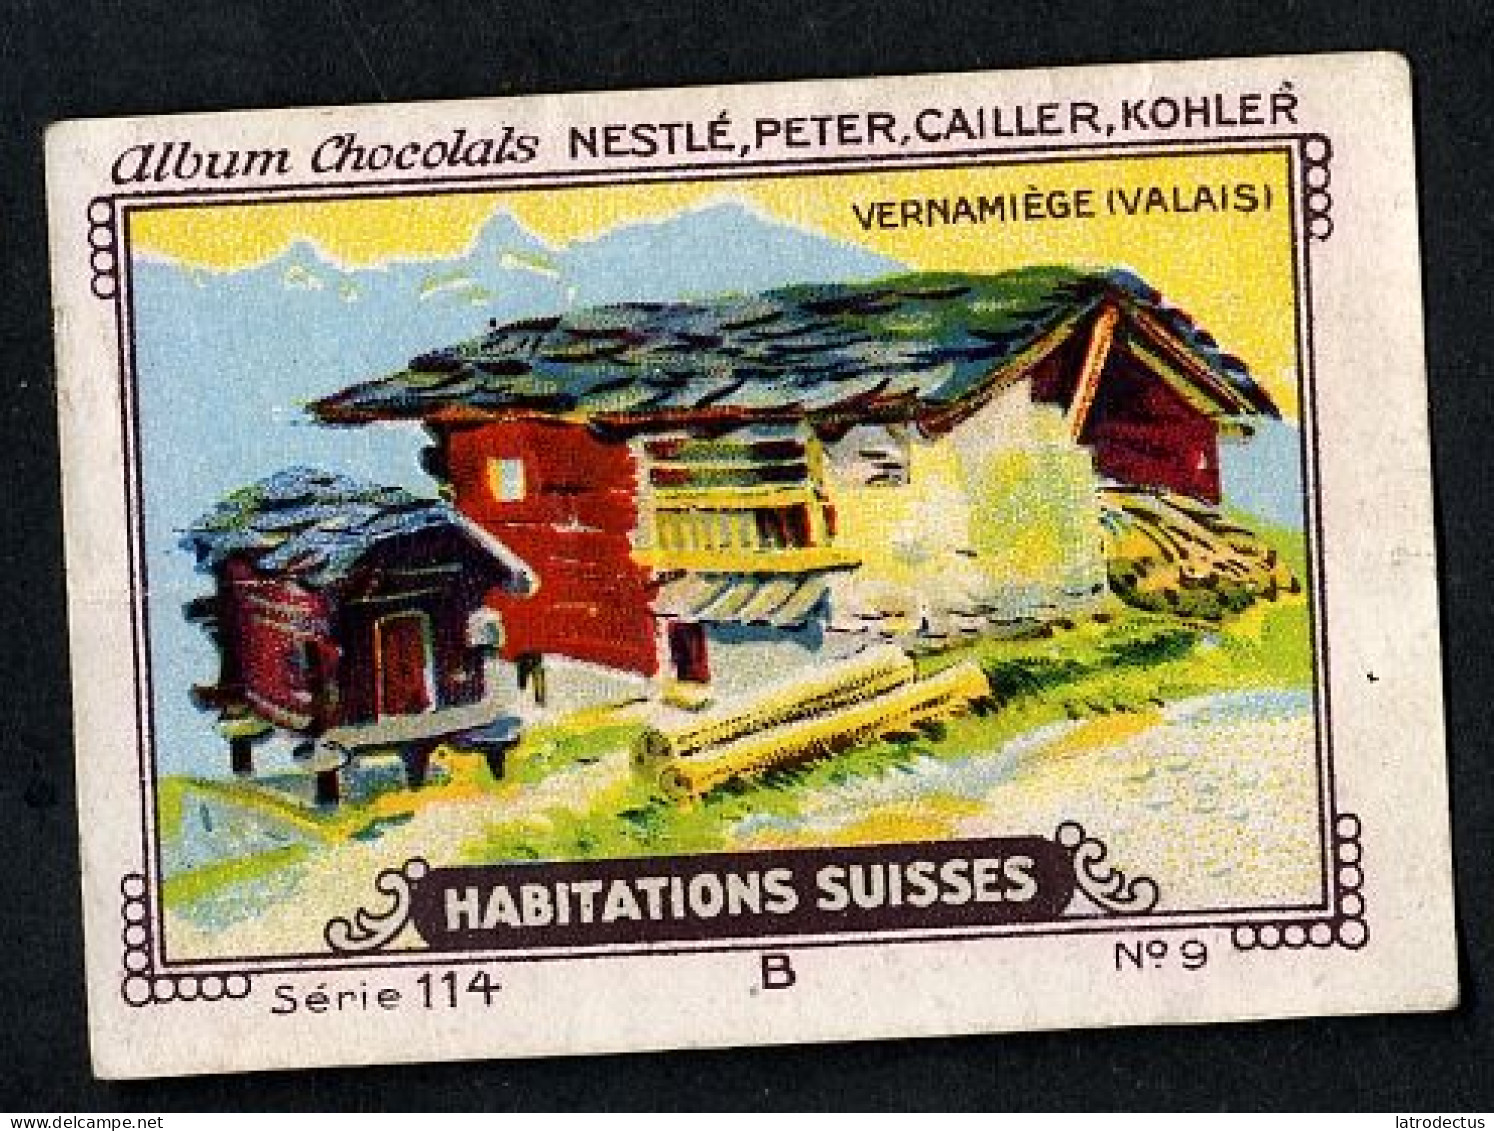 Nestlé - 114B - Habitations Suisses, Swiss Houses, Schweizer Häuser - 9 - Vernamiège, Valais - Nestlé